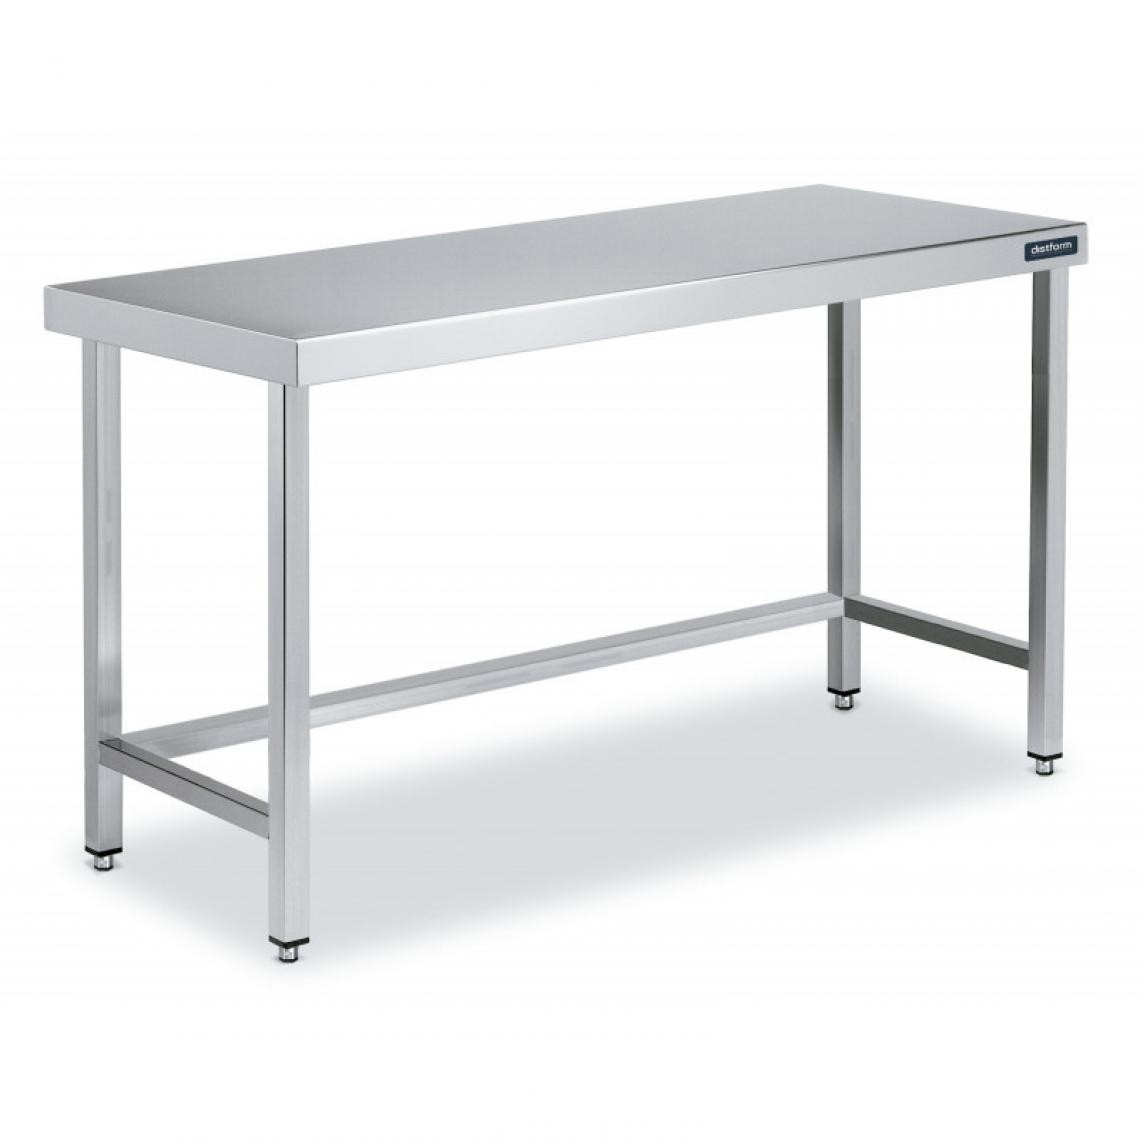 DISTFORM - Table Centrale en Inox avec renforts Profondeur 700 mm - Distform - Acier inoxydable700x700 - Tables à manger